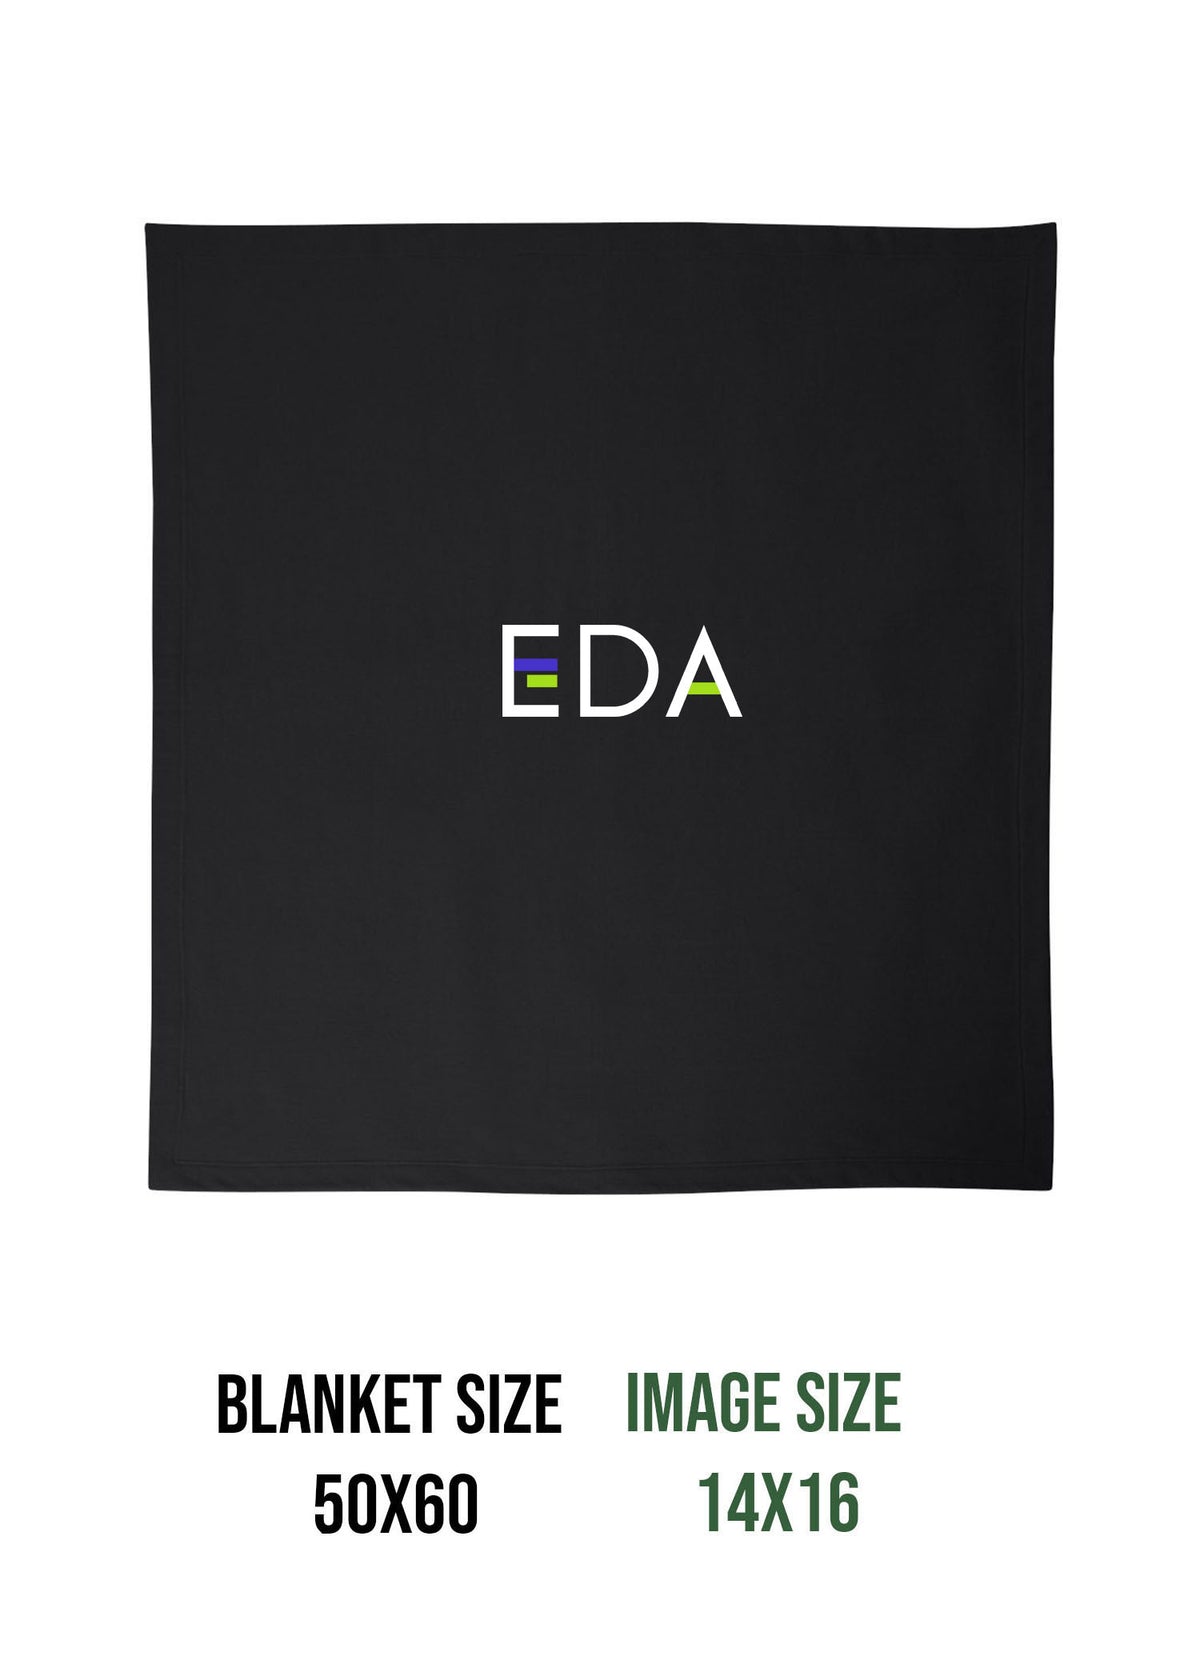 Evolution Dance Arts Design 4 Blanket